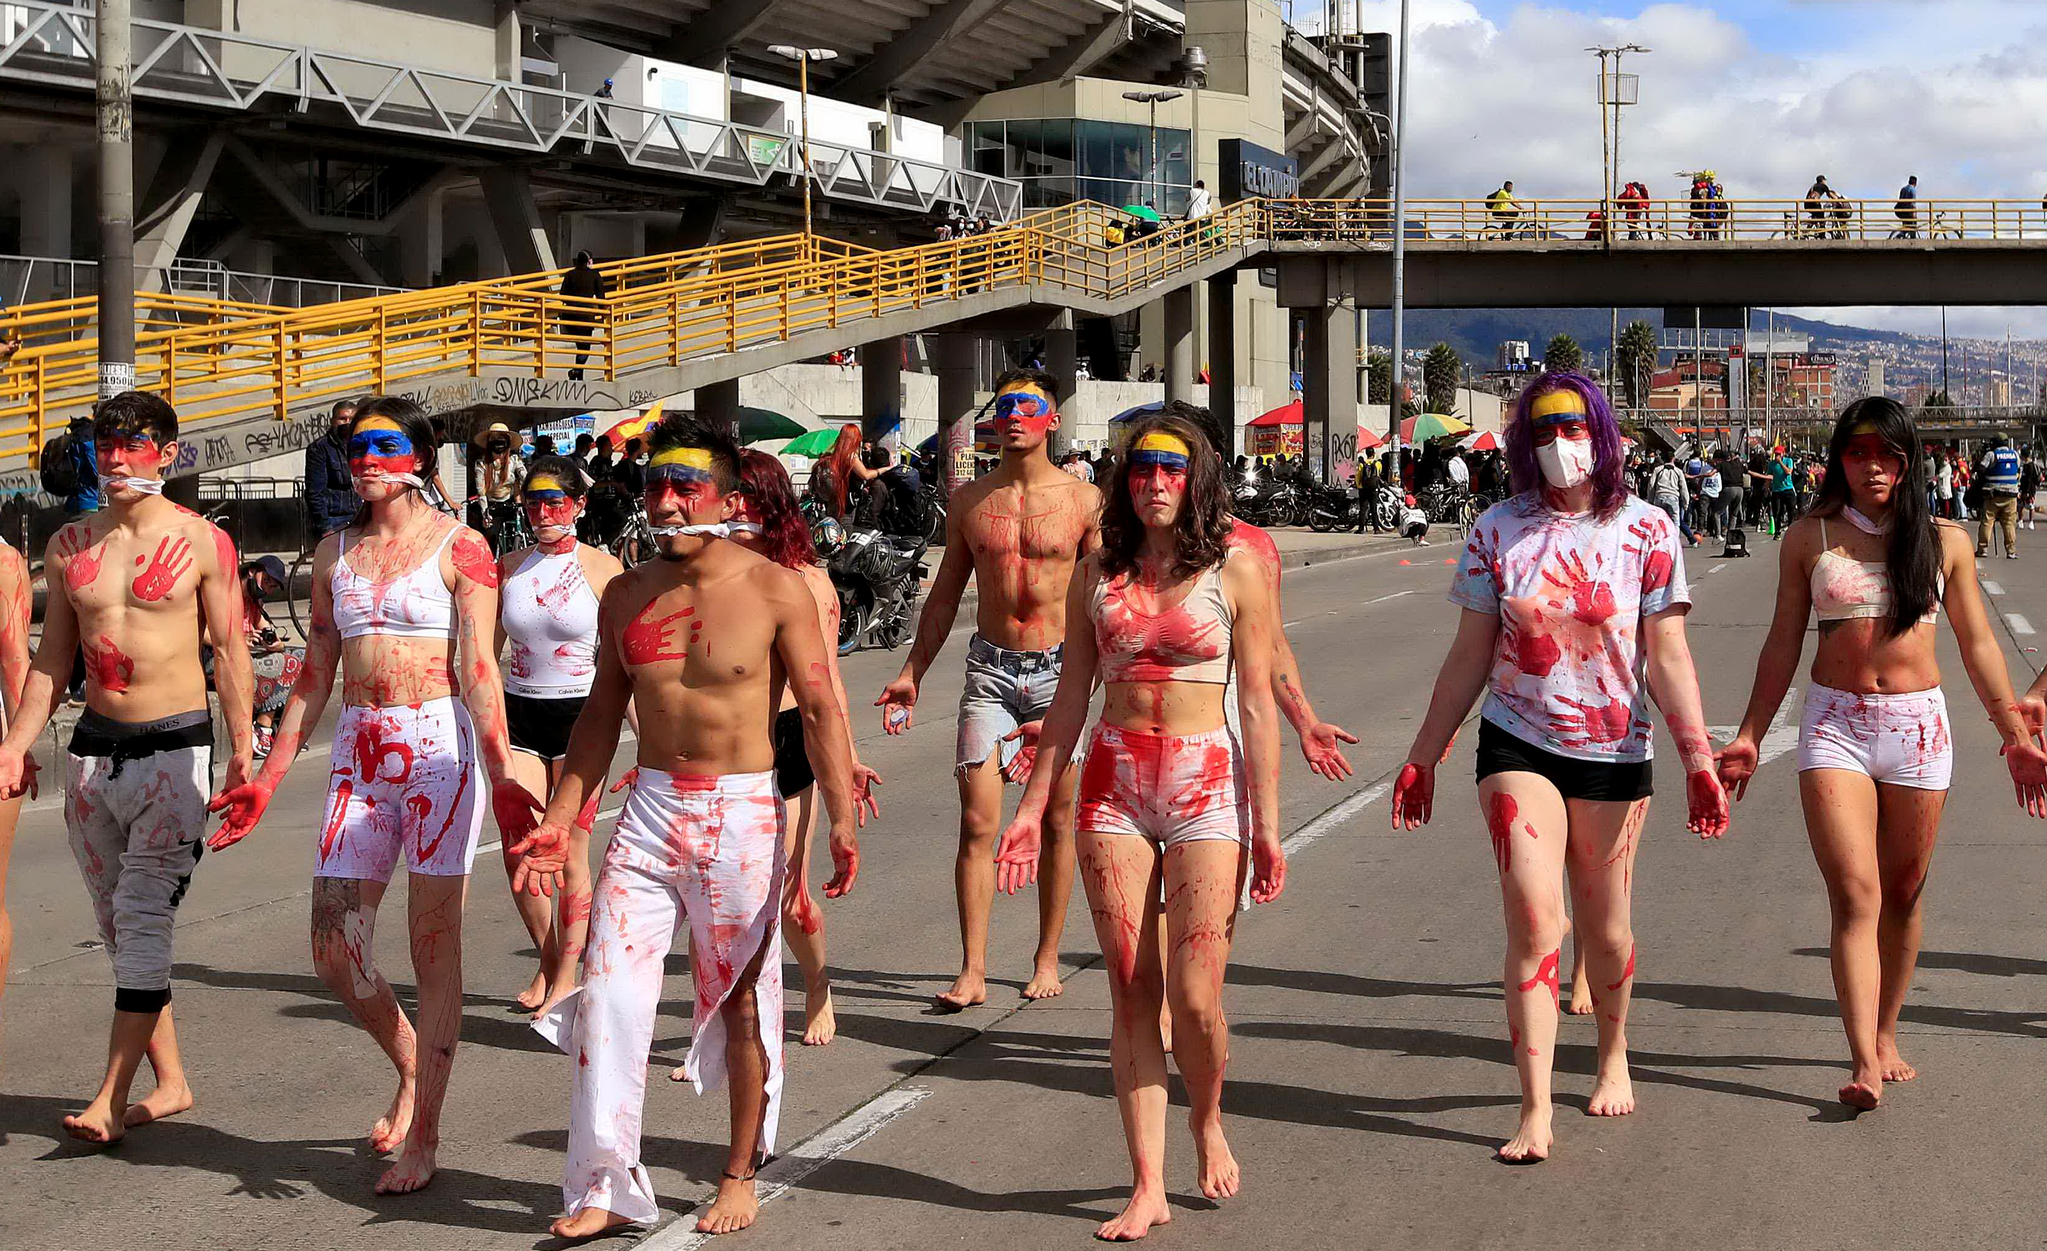 [이 시각] "이런 판국에 무슨 축구", 거리로 나선 콜롬비아 행위예술가들 